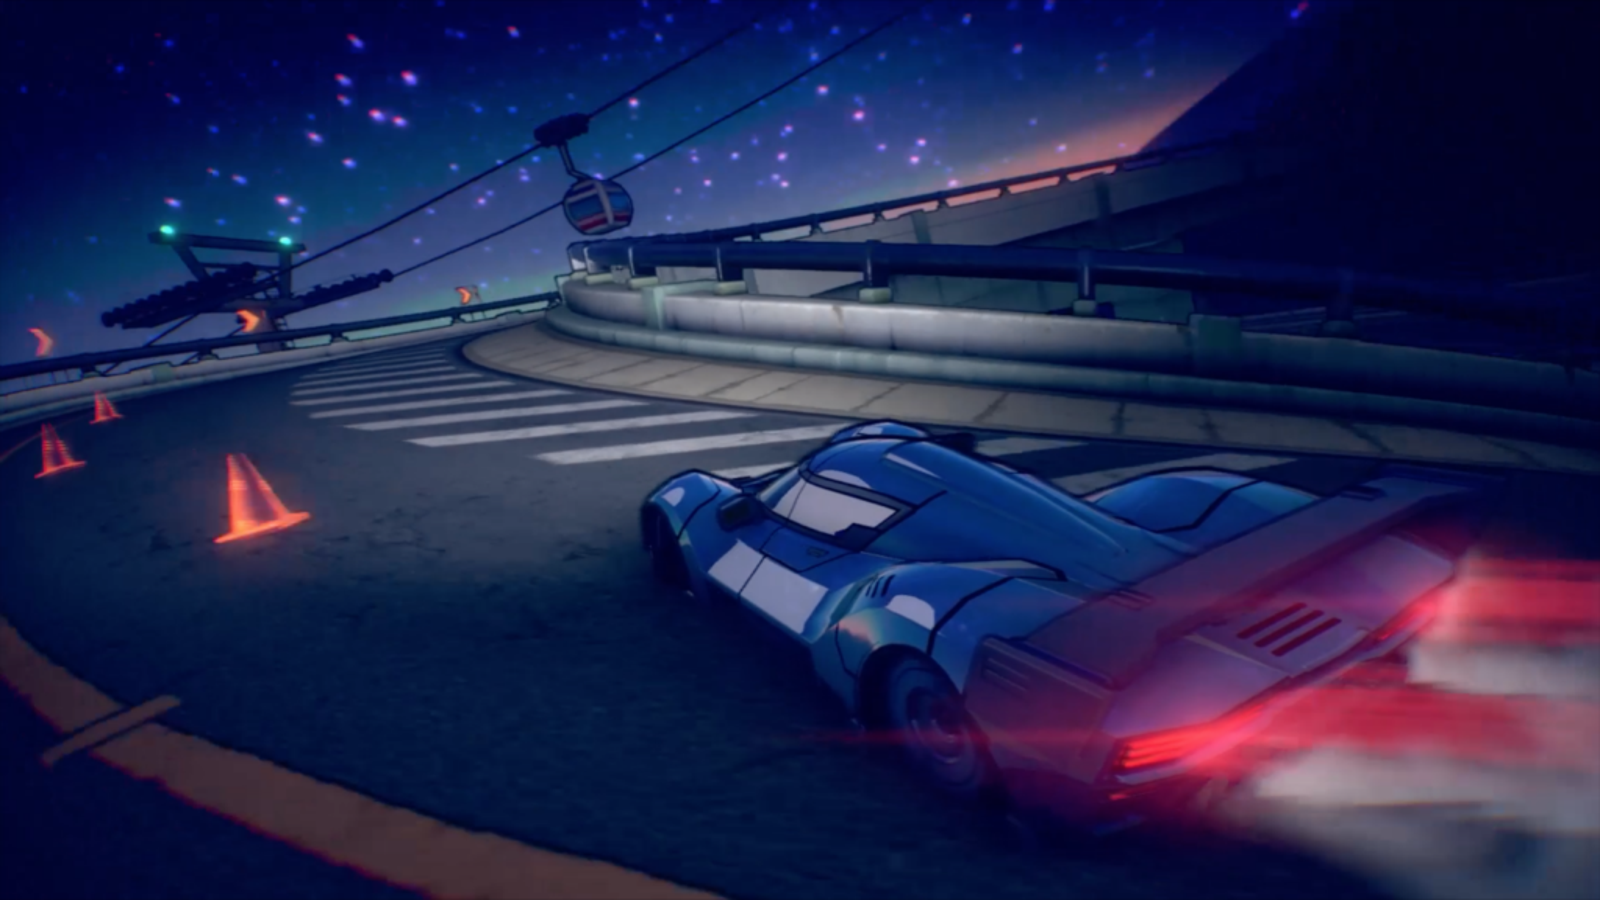 Inertial Drift, jogo de corrida estilo arcade, é anunciado para